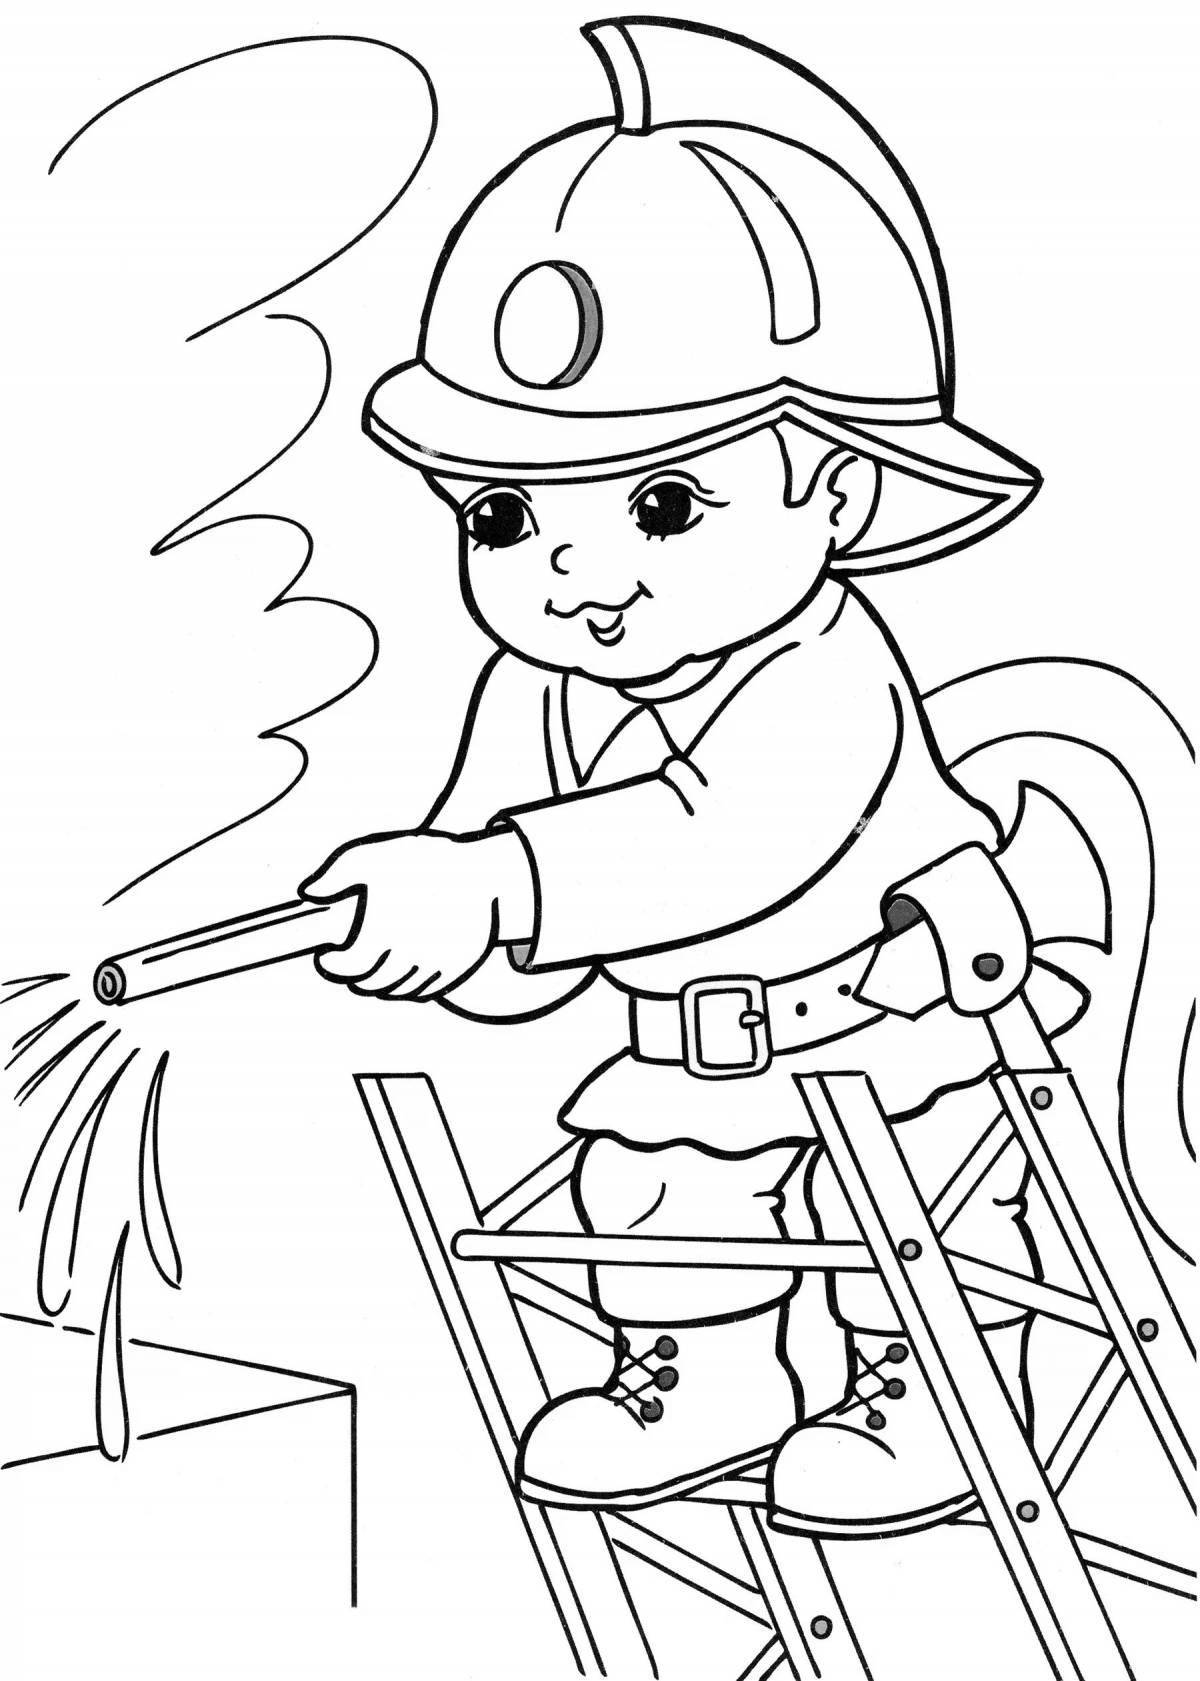 Пожарник раскраска для детей - 79 фото